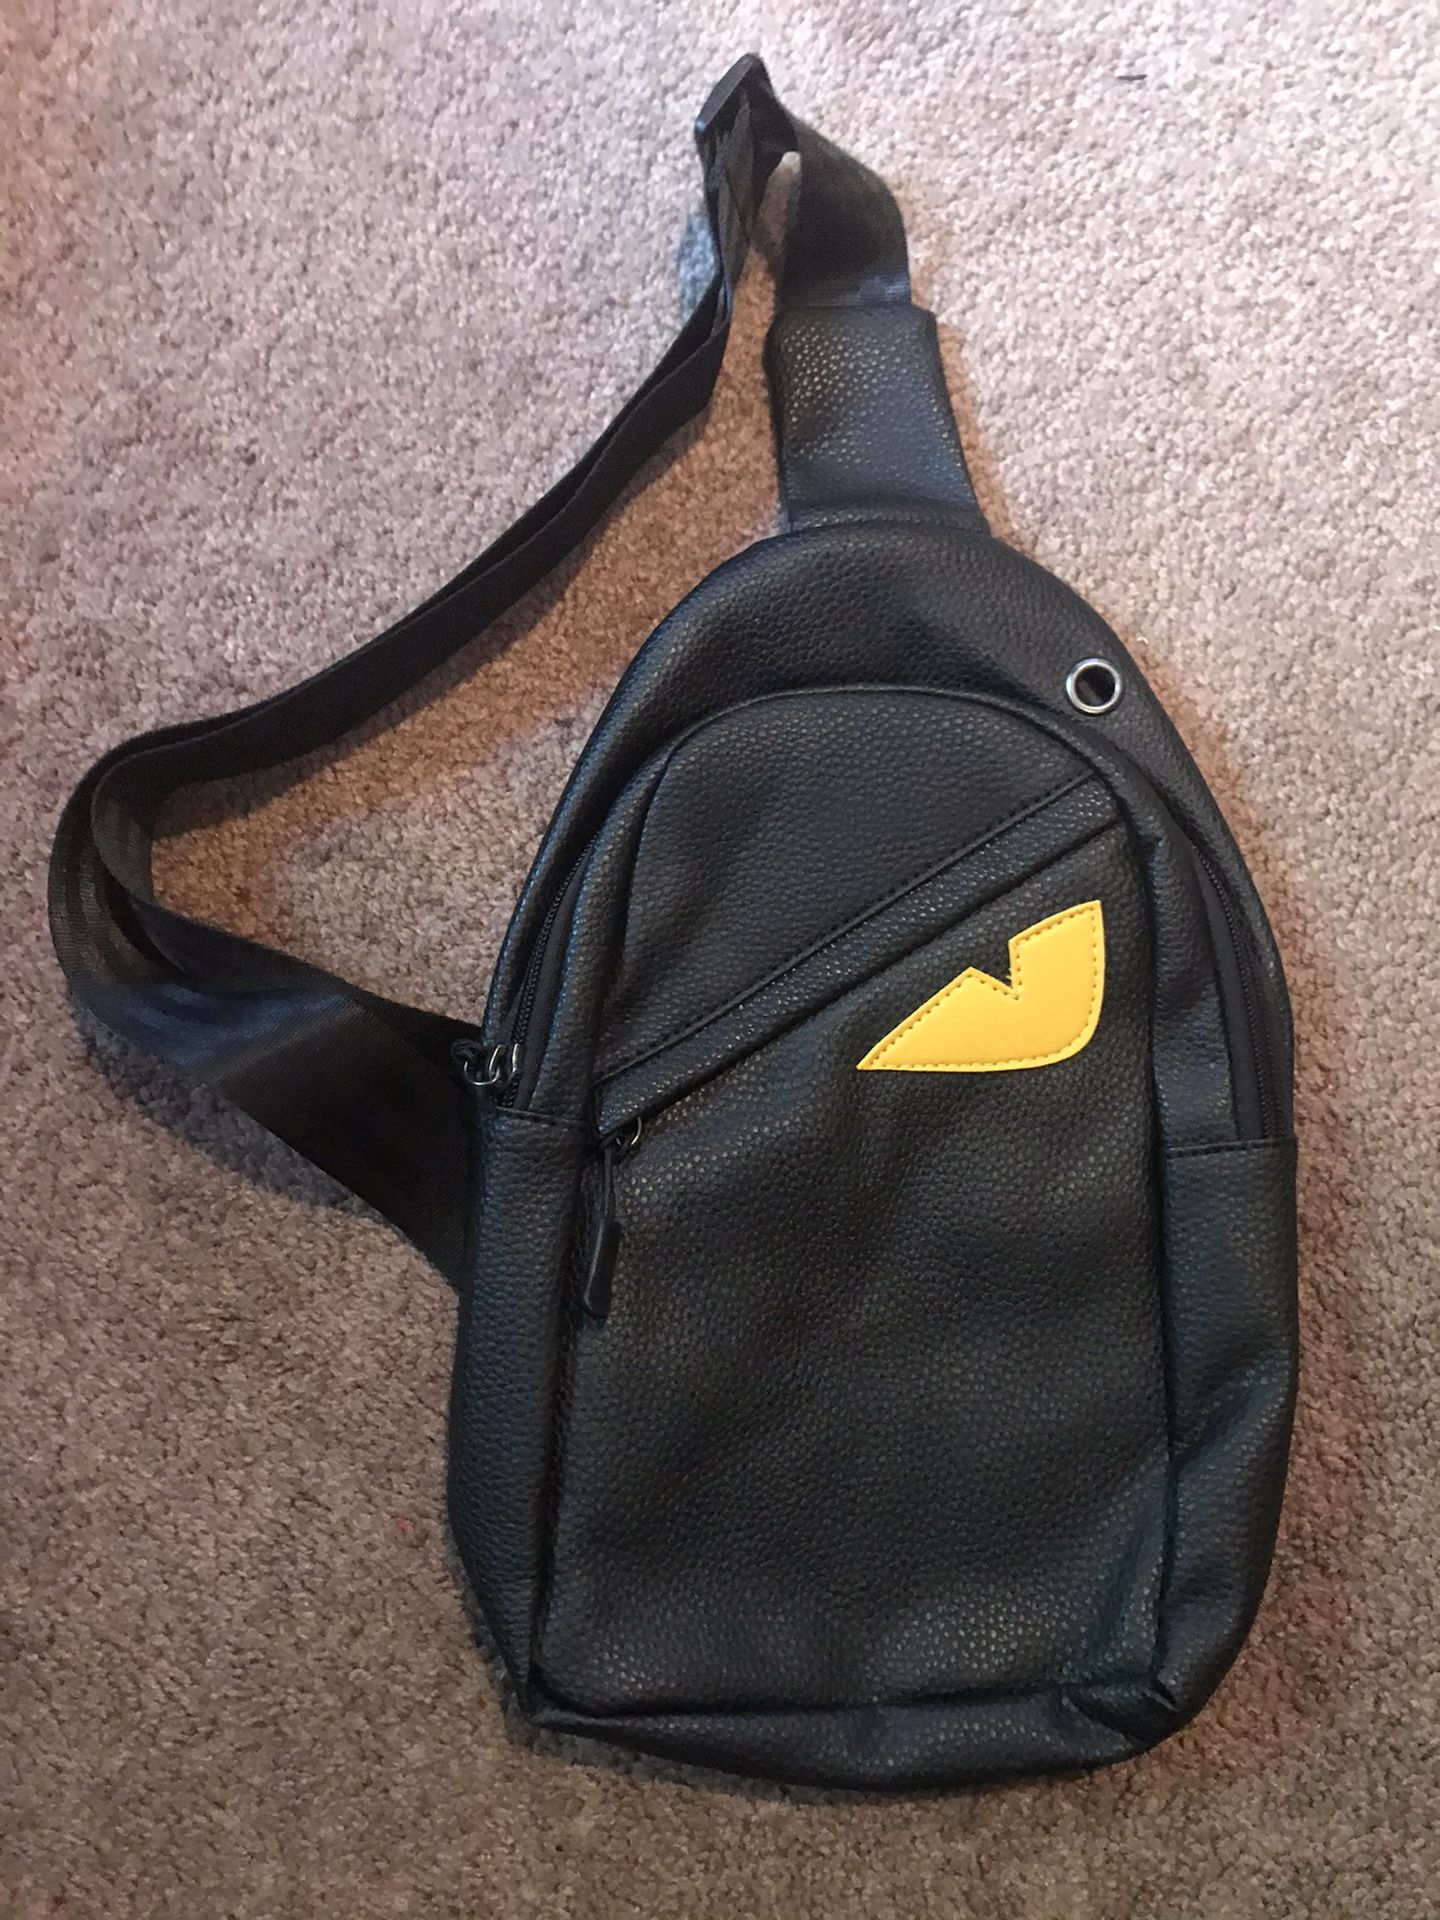 Men's Leather Fannypack Chest Sling Day Pack Shoulder Bag Sport Travel Backpack